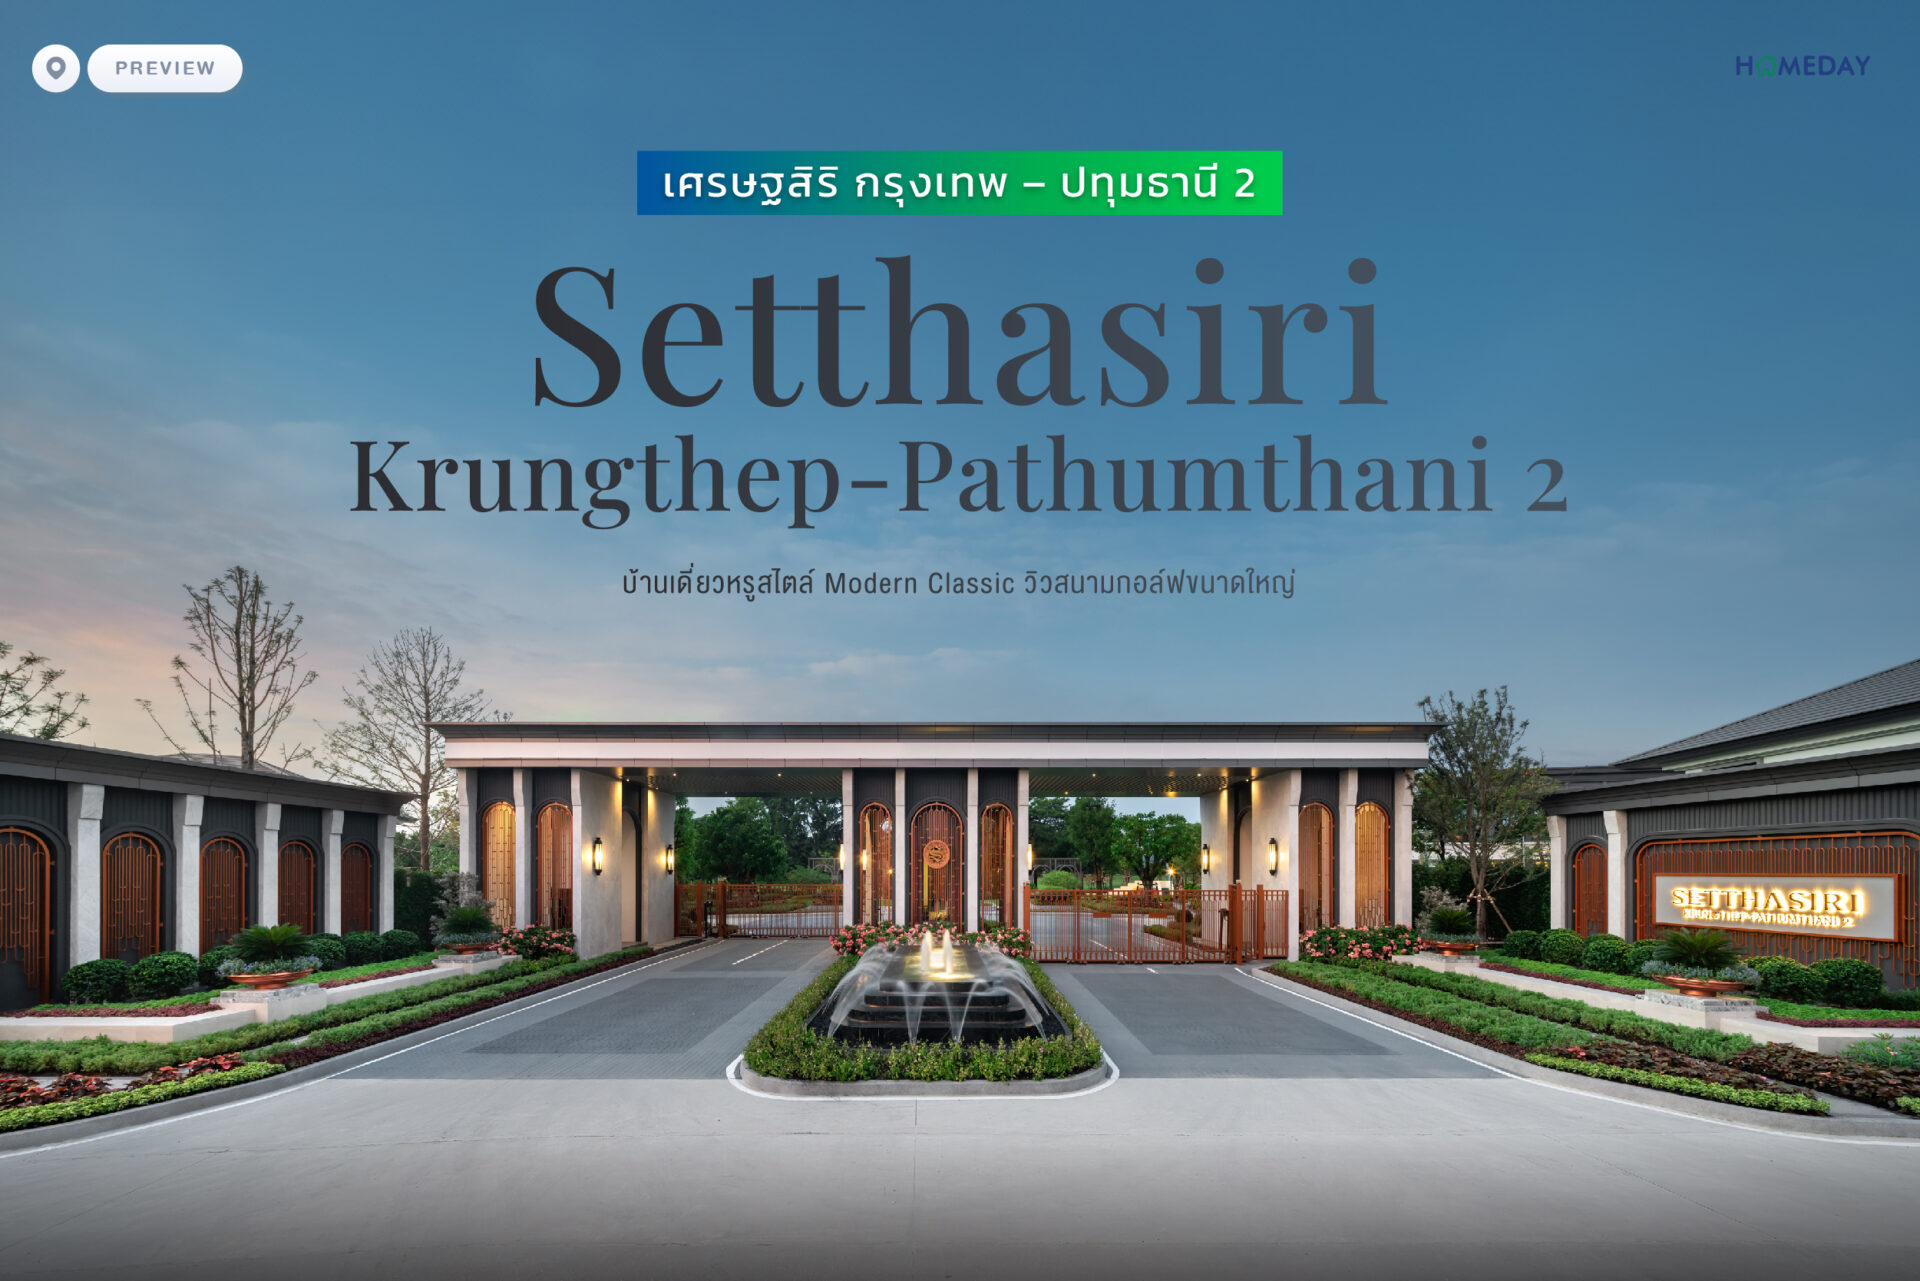 พรีวิว เศรษฐสิริ กรุงเทพ – ปทุมธานี 2 (setthasiri Krungthep Pathumthani2) บ้านเดี่ยวดีไซน์ Modern Classic พร้อมวิวสนามกอล์ฟขนาดใหญ่